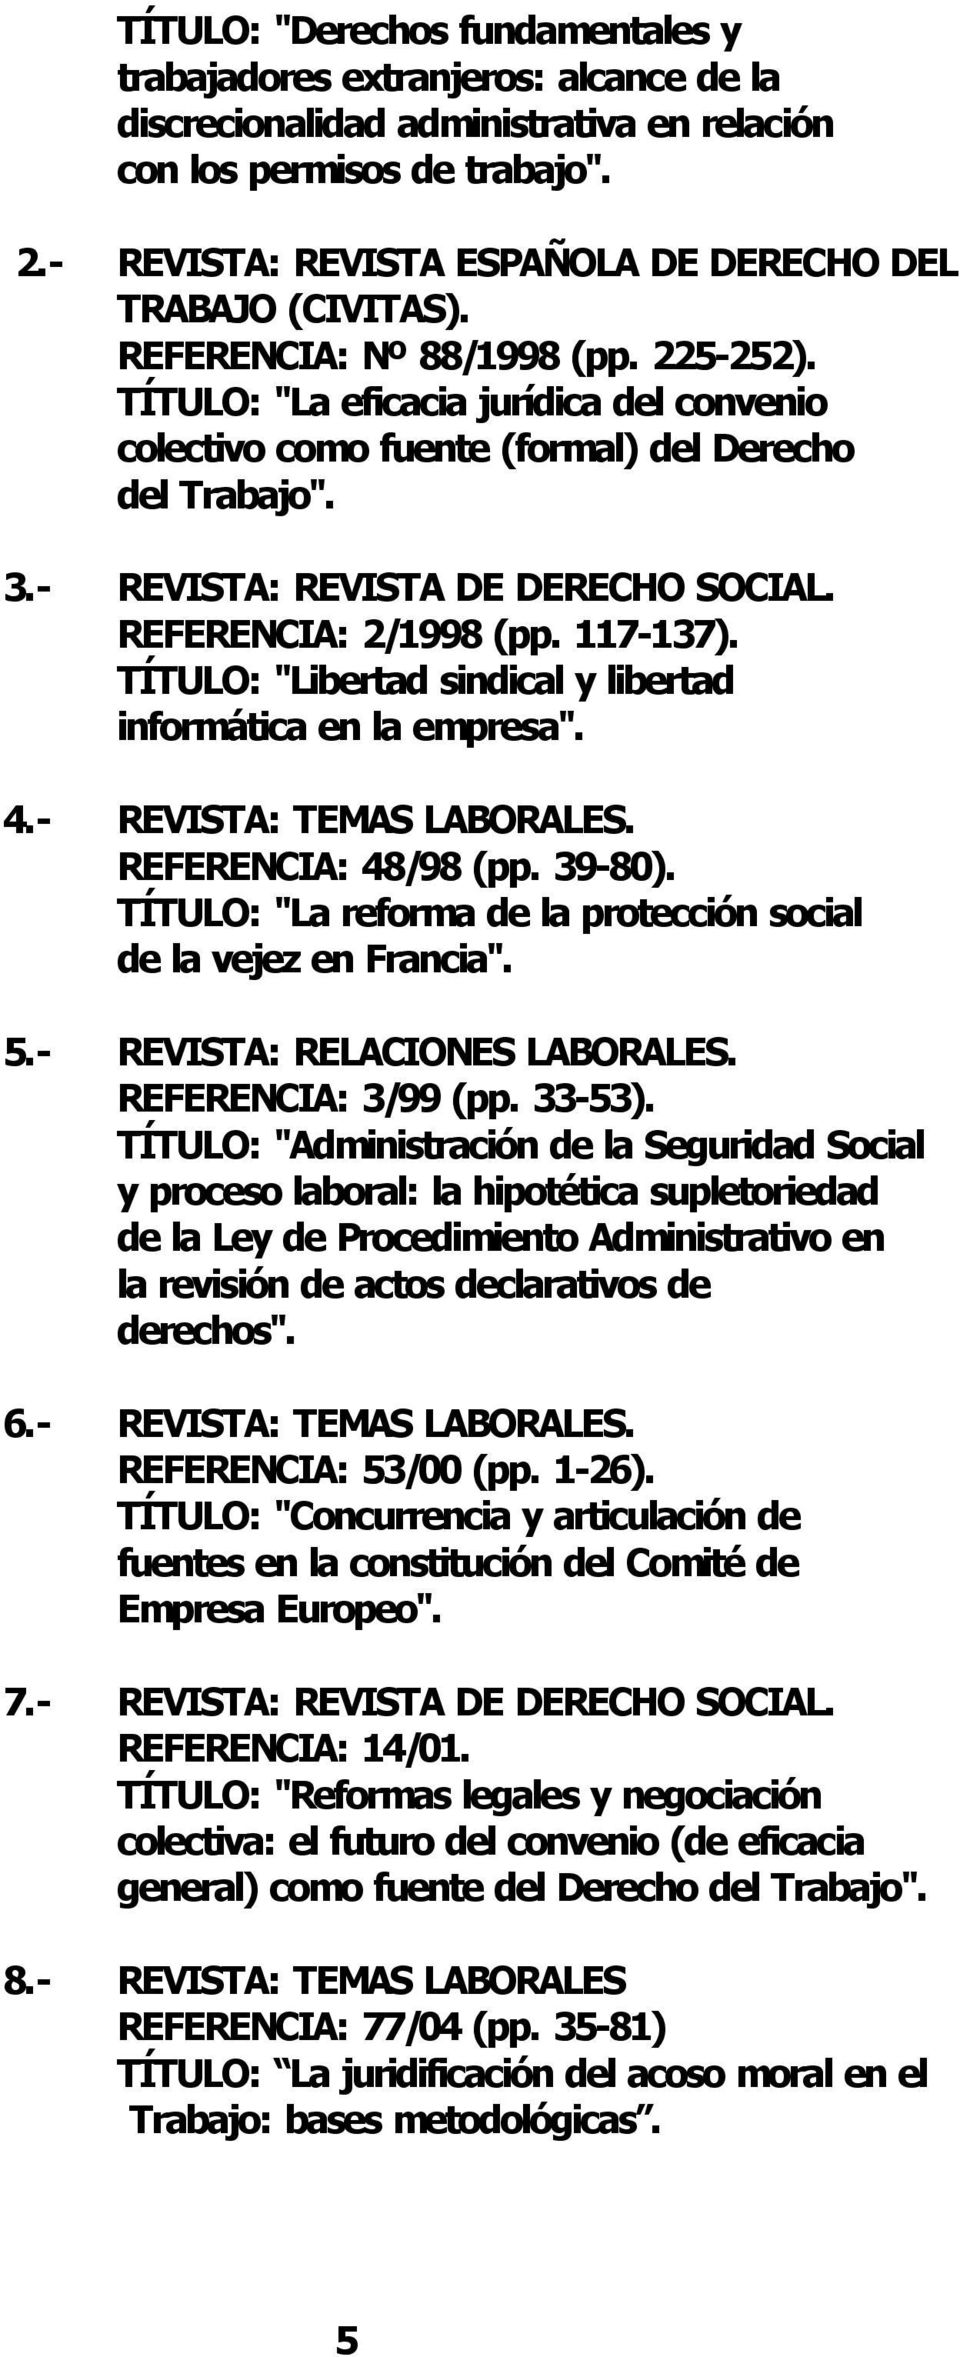 REVISTA: REVISTA DE DERECHO SOCIAL. REFERENCIA: 2/1998 (pp. 117 137). TÍTULO: "Libertad sindical y libertad informática en la empresa". 4. REVISTA: TEMAS LABORALES. REFERENCIA: 48/98 (pp. 39 80).